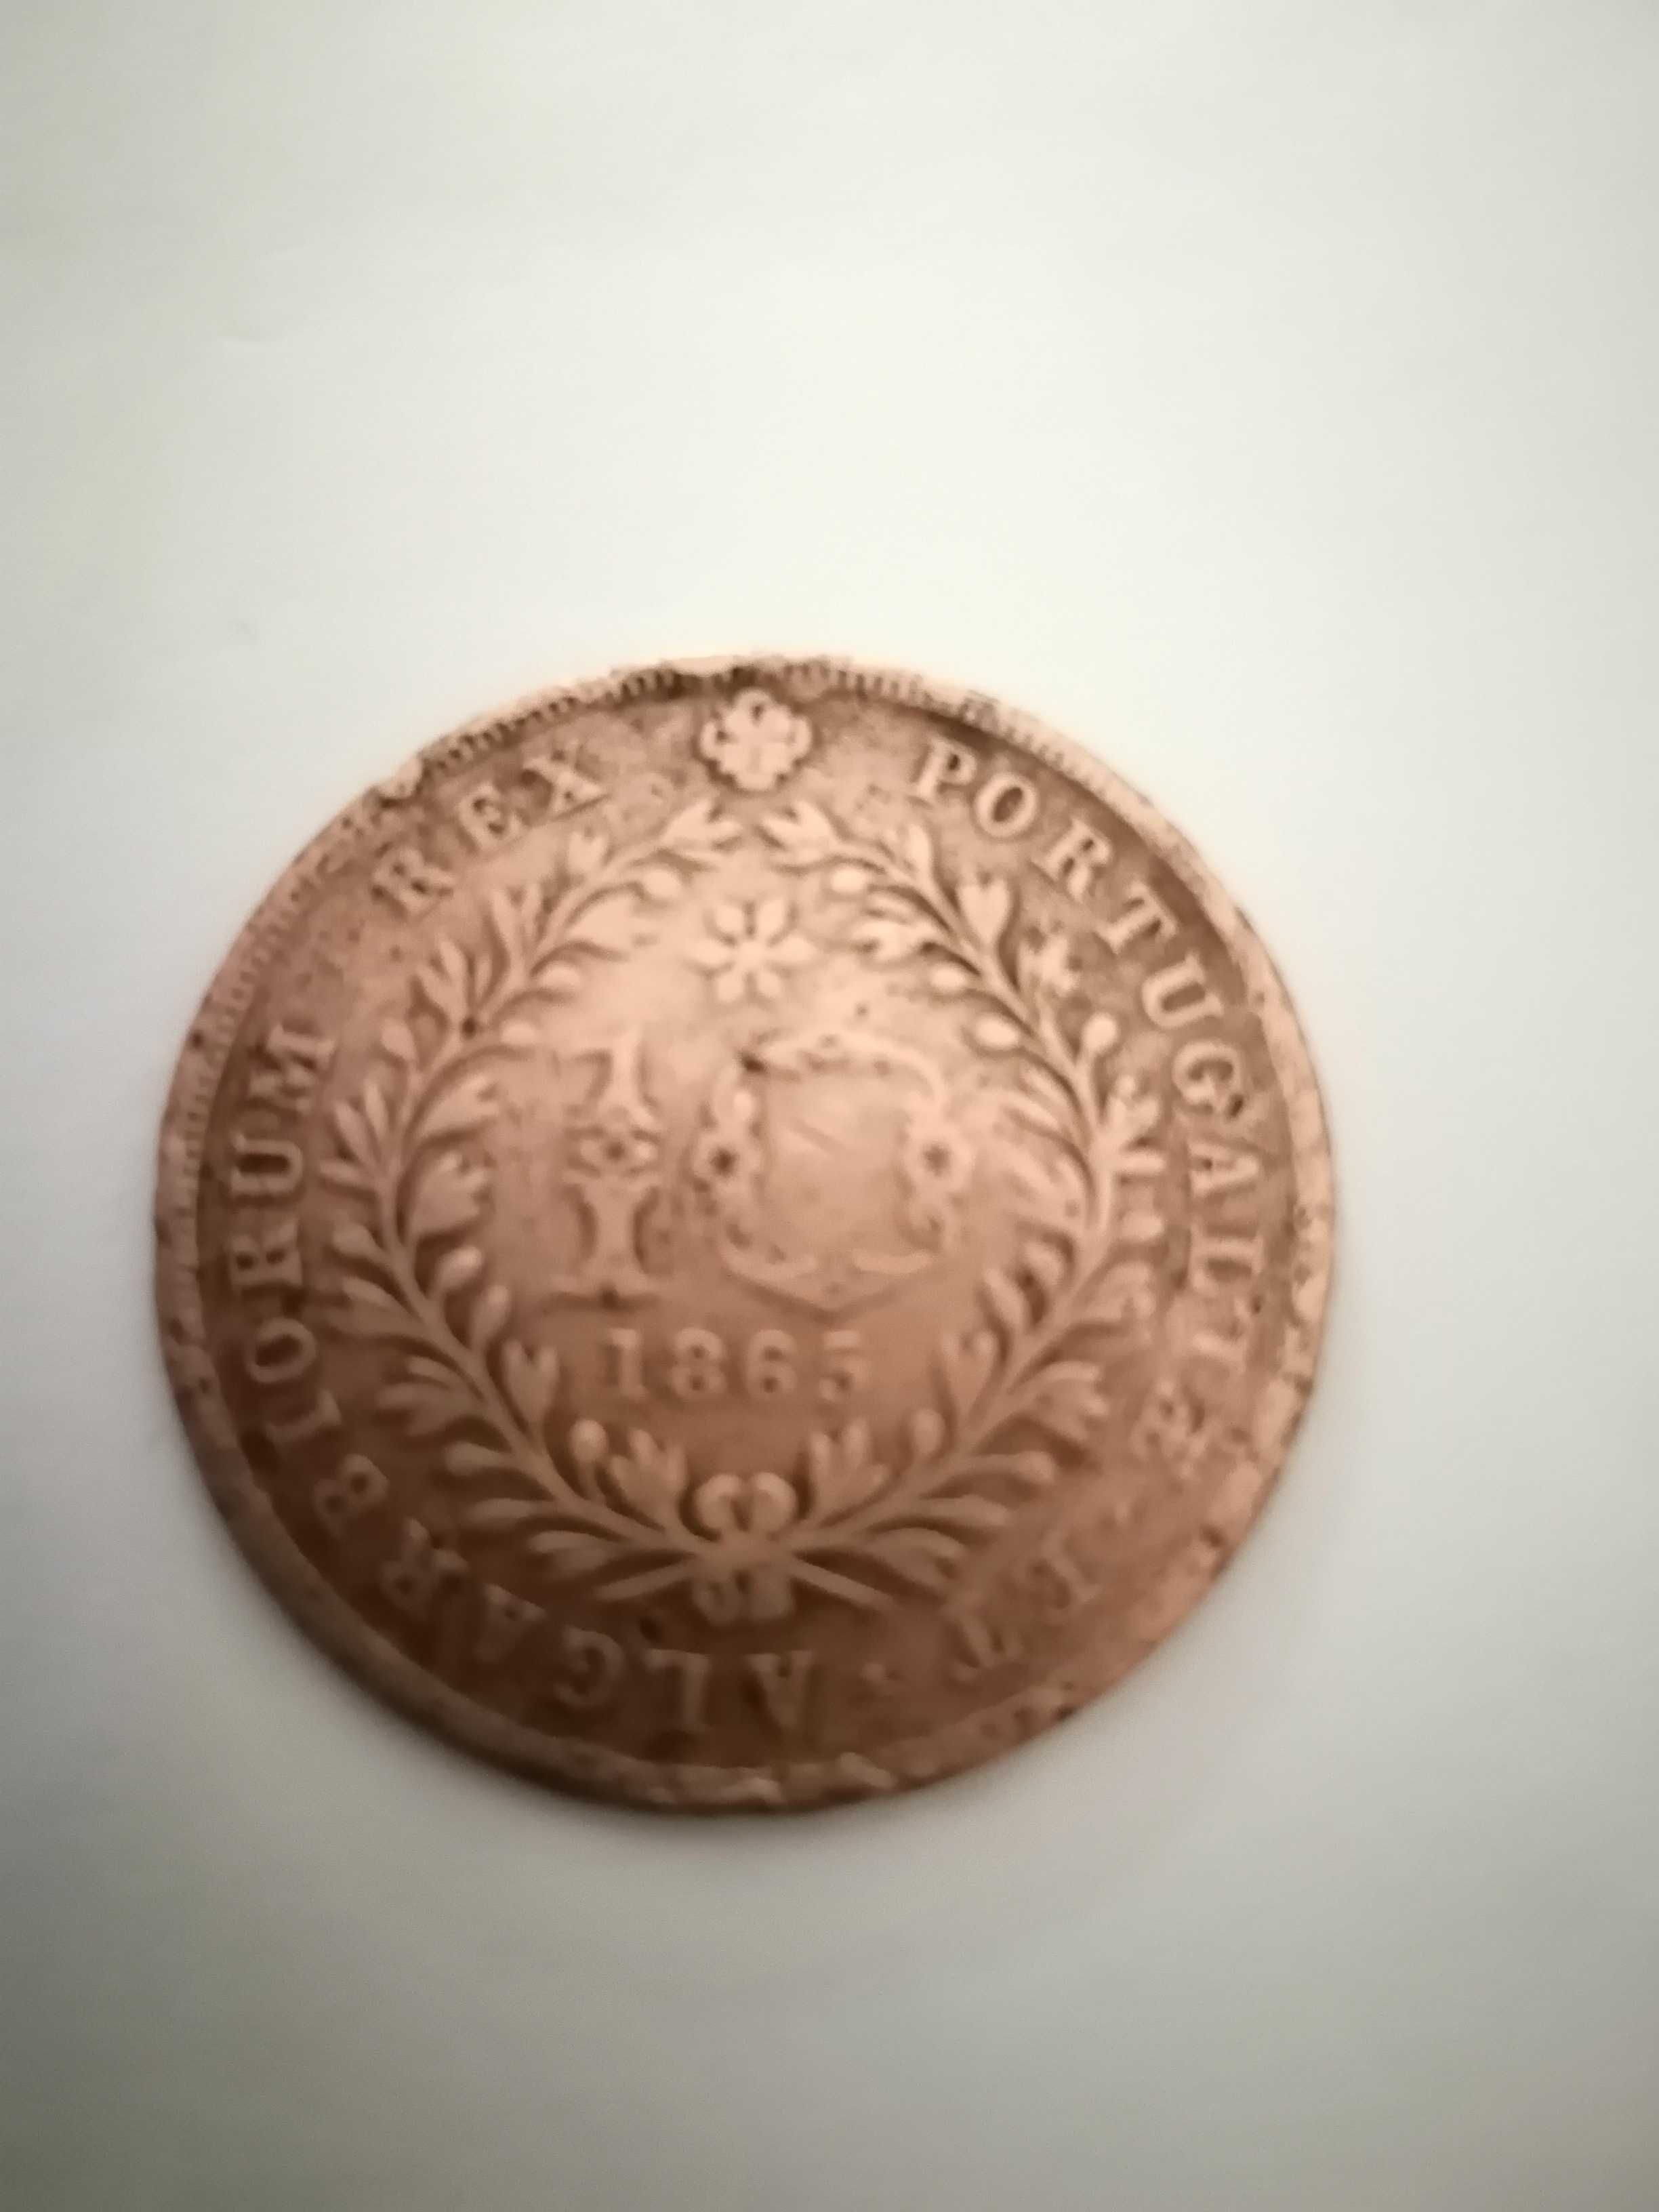 2 moedas da Monarquia, que circularam nos Açores,de 10 réis.